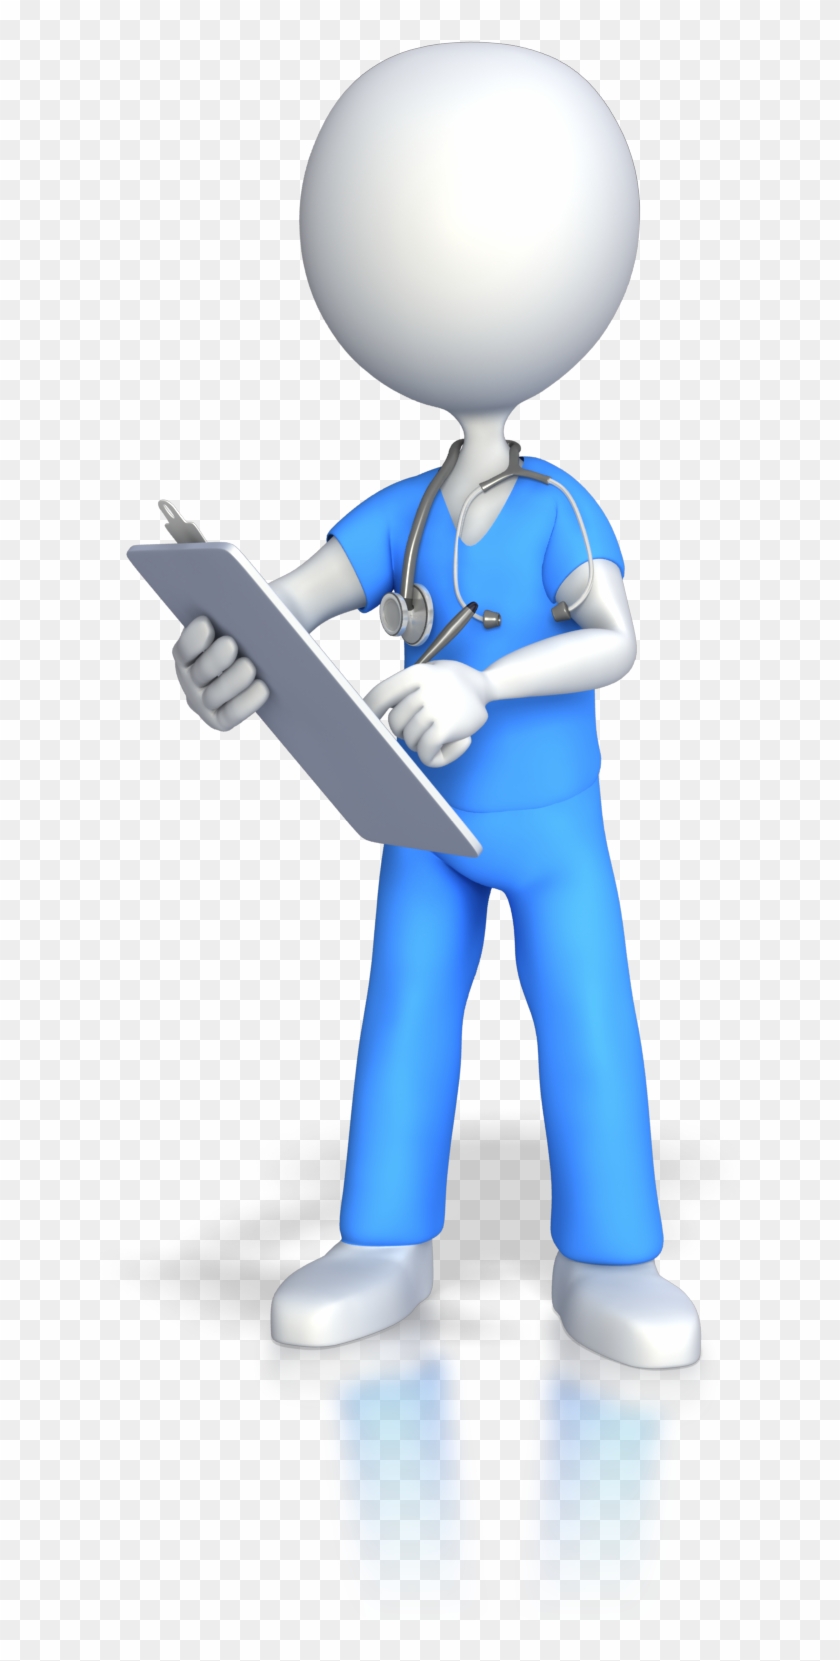 Nursing Registered Nurse Stick Figure Animation Clip - Nursing Registered Nurse Stick Figure Animation Clip #293412